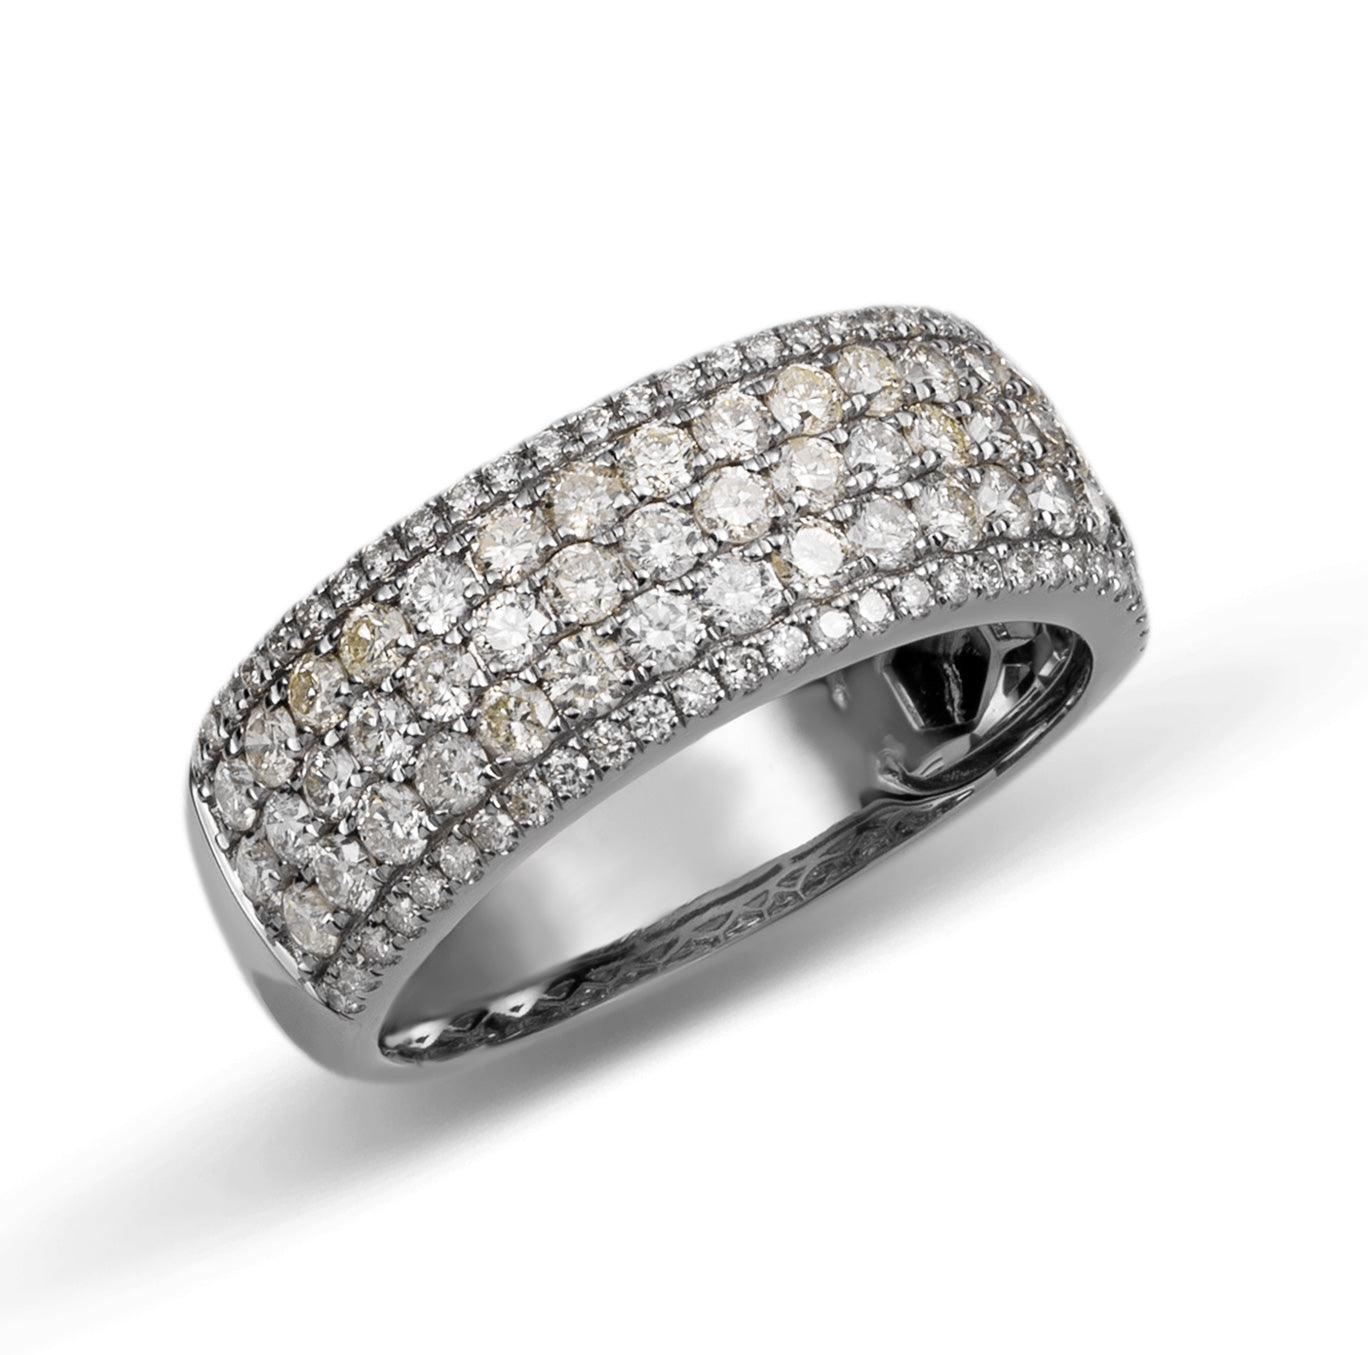 Multi-Row Band Diamond Ring 2.23ct 14K White Gold - bayamjewelry